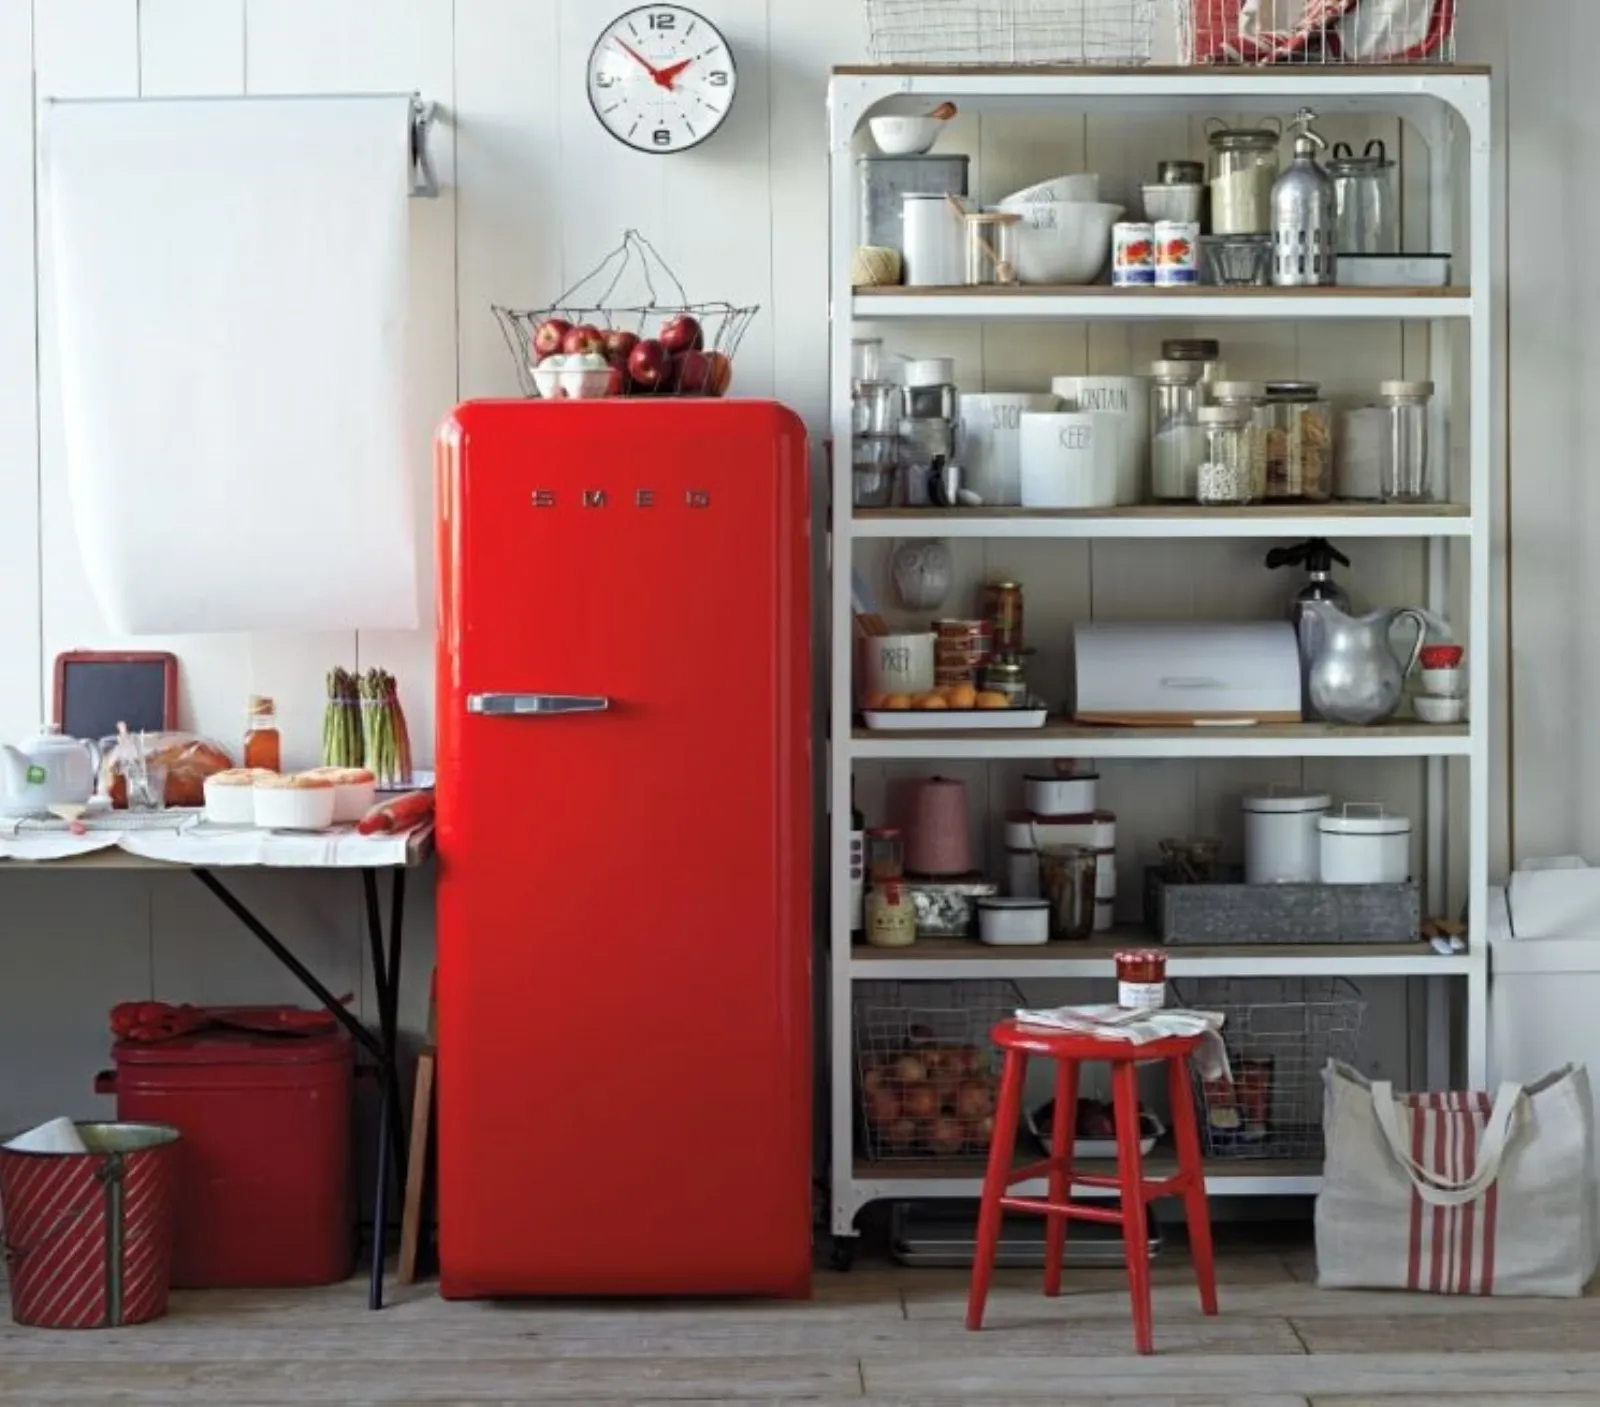 Personalizza la tua cucina con un frigorifero colorato!